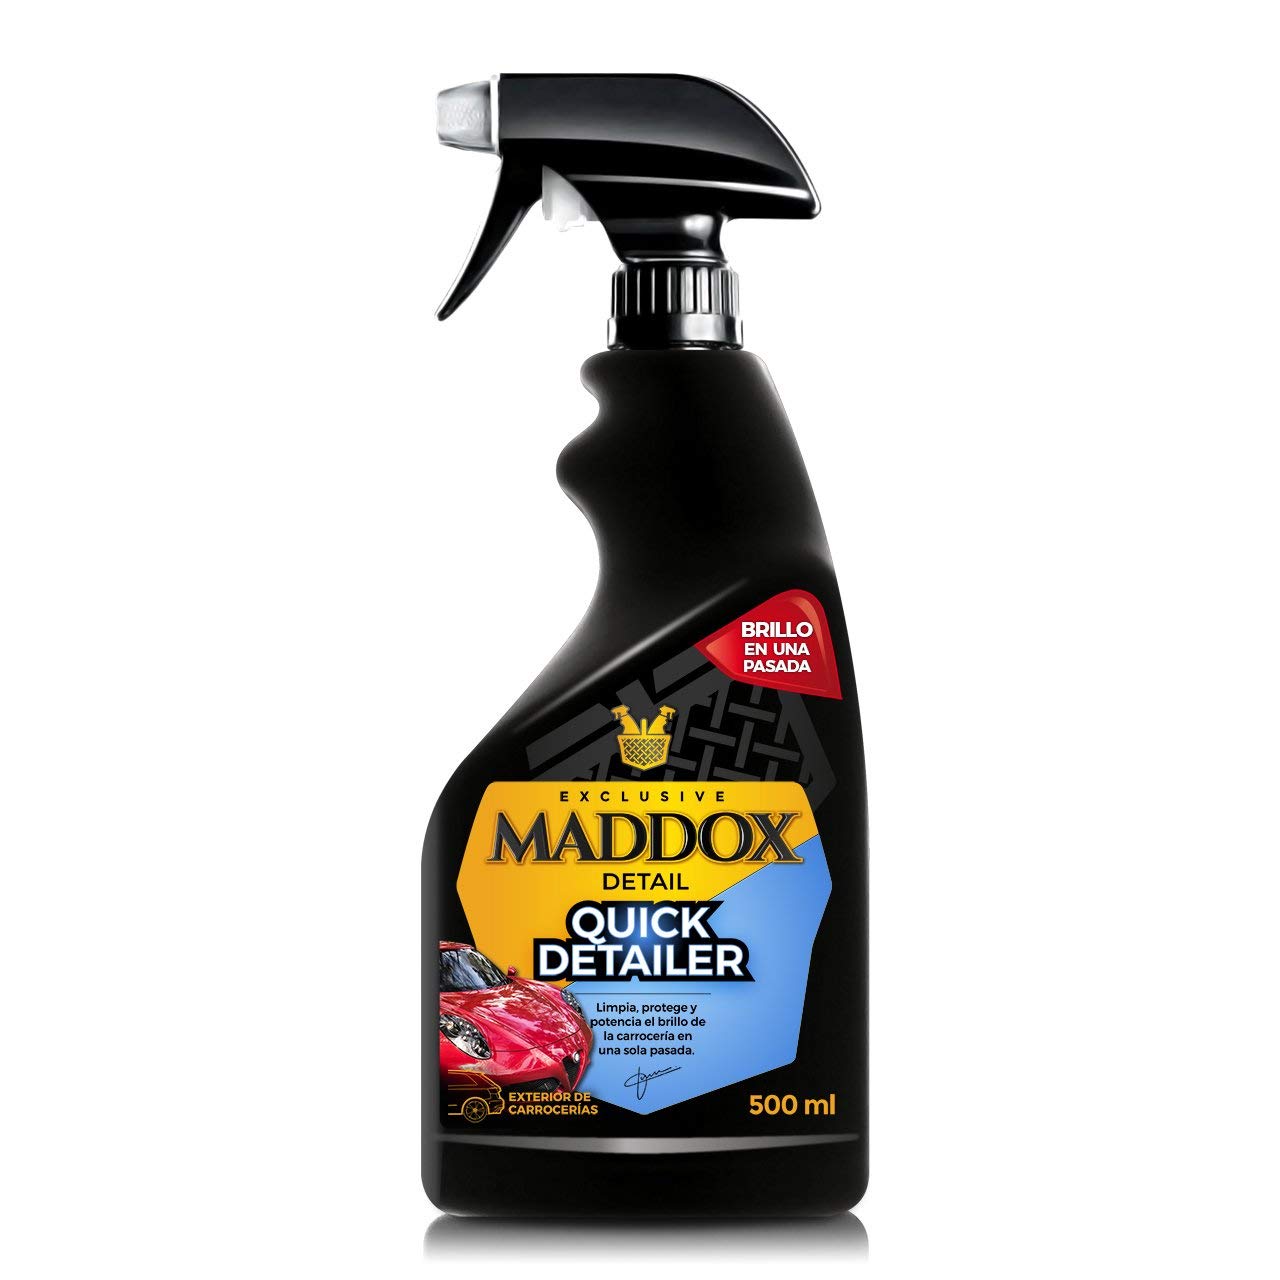 Maddox Detail - Quick Detailer 500ml | Schnellwachs für Autos | Intensiver Glanz | Schutz und Pflege für Ihr Fahrzeug | Ideal für Maddox Engine Cleaner und Shampoo mit Auto-Wachs von Maddox Detail